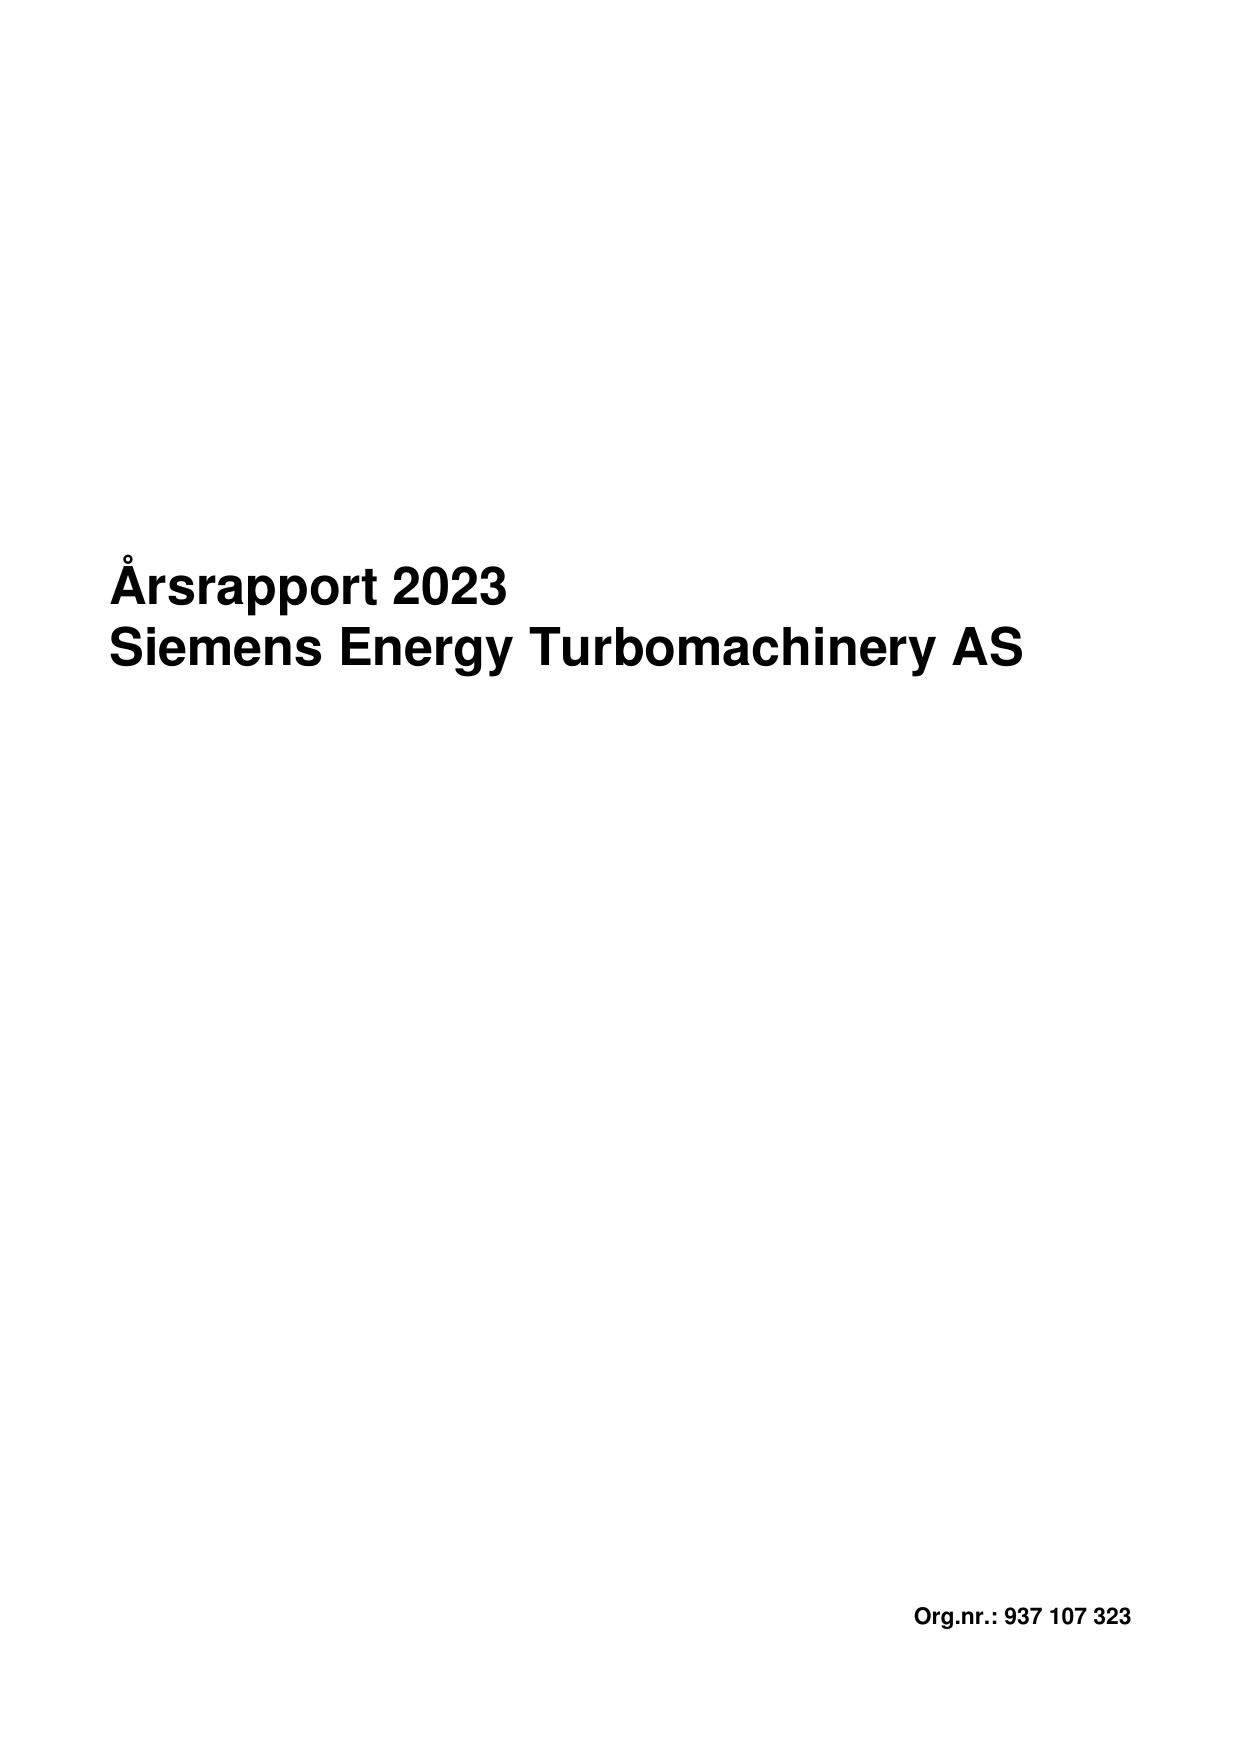 CLOUDIAN 2022 Annual Report